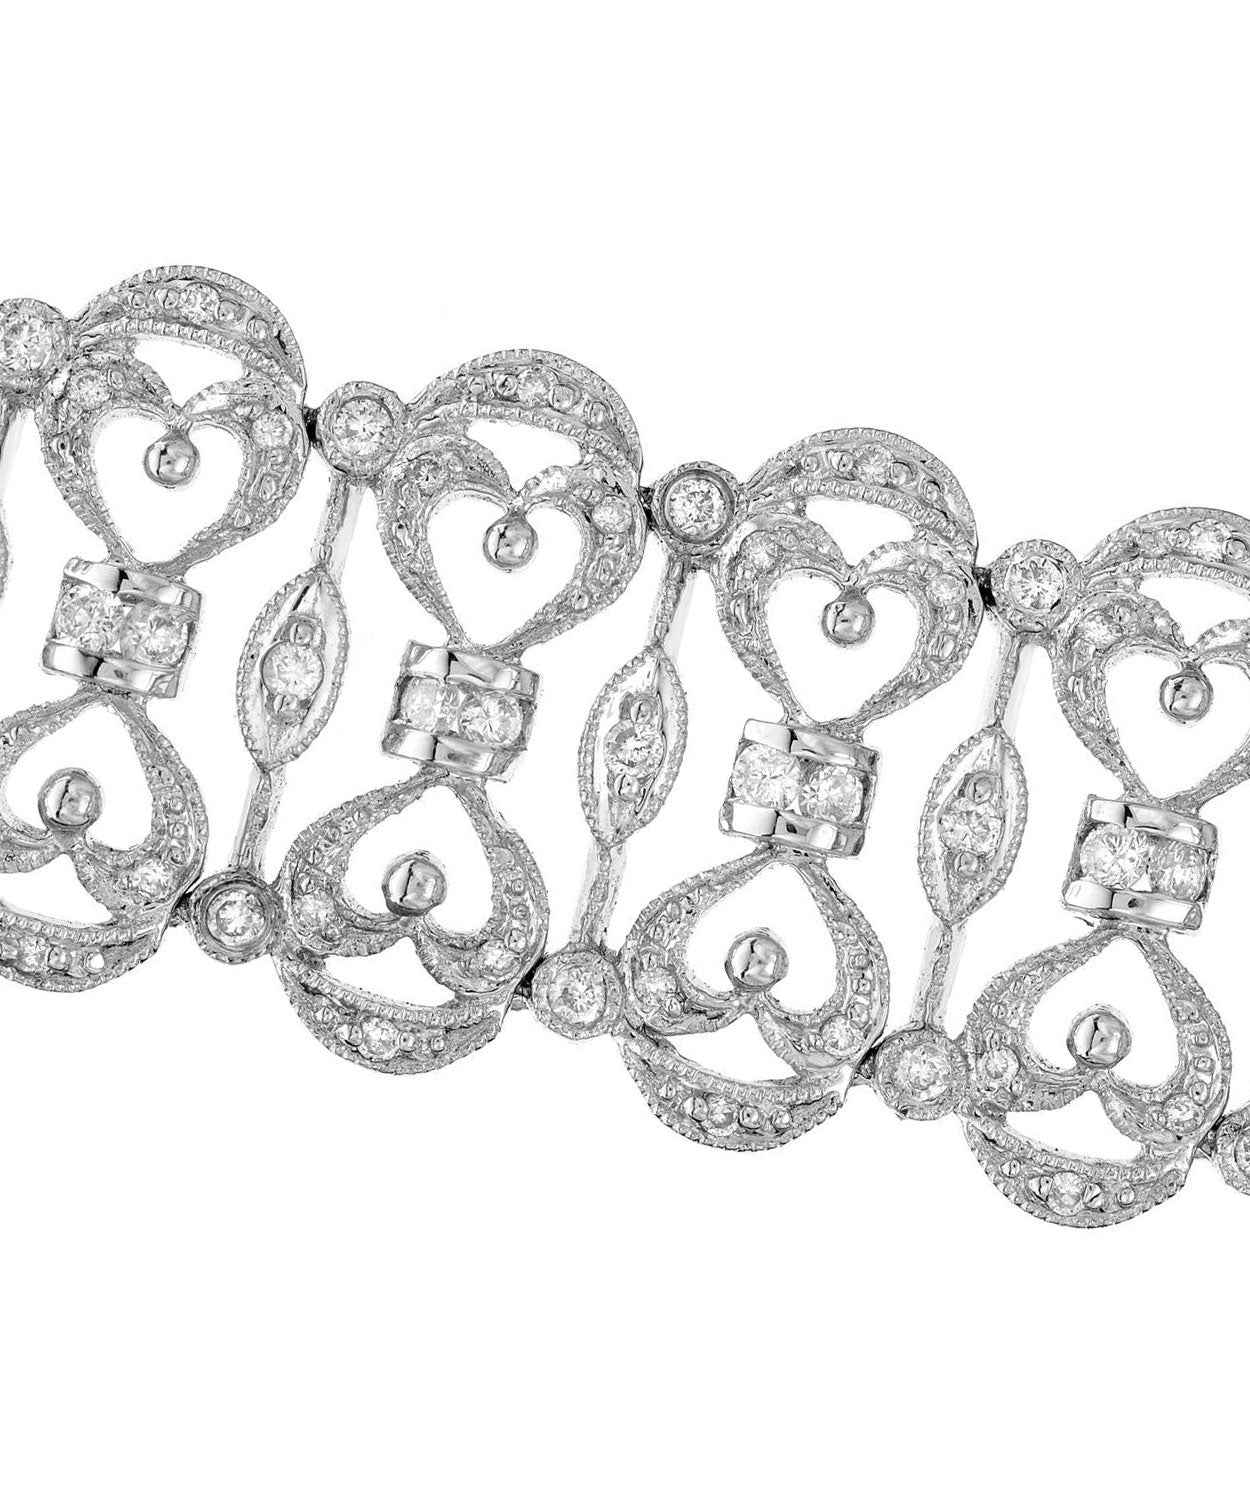 Glamour Toujours Collection 1.78 ctw Diamond 18k White Gold Elegant Bracelet View 3